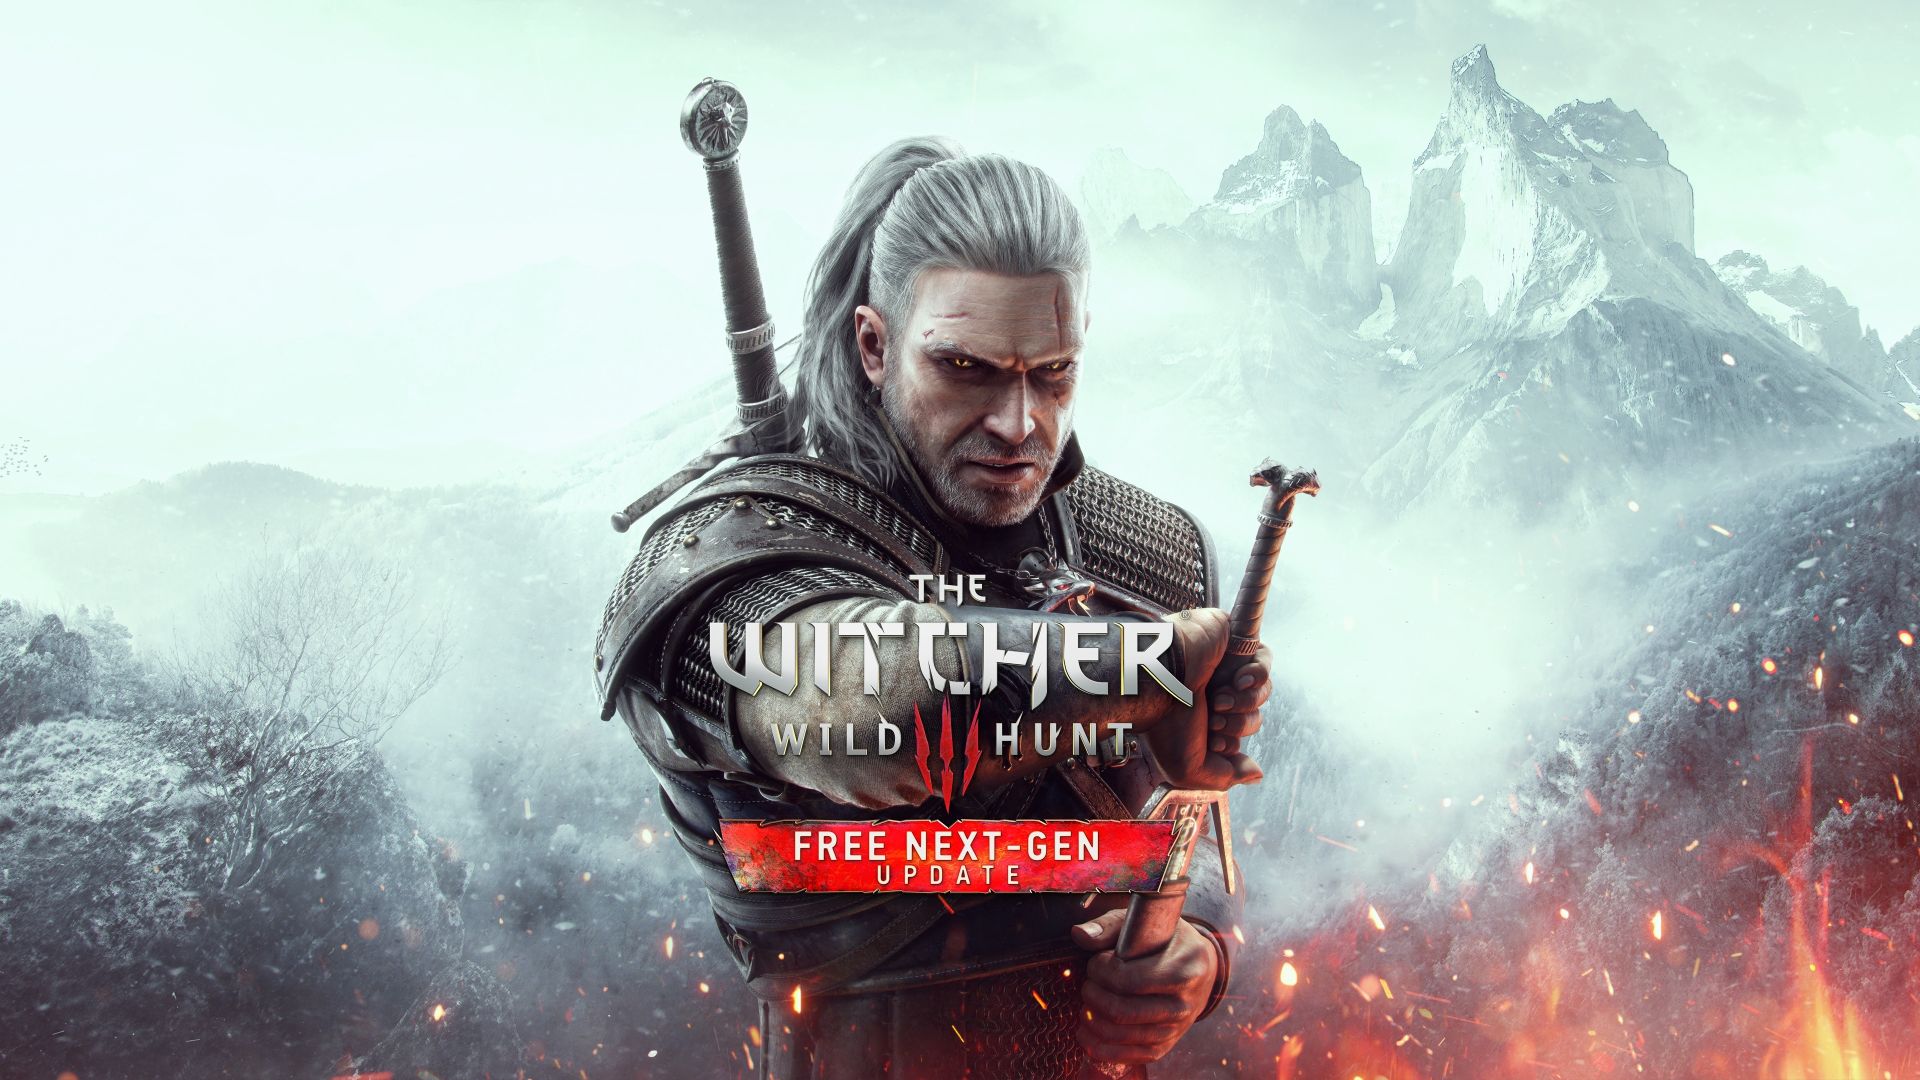 La actualización de próxima generación de The Witcher 3: Wild Hunt llega a Xbox Series X|S el 14 de diciembre